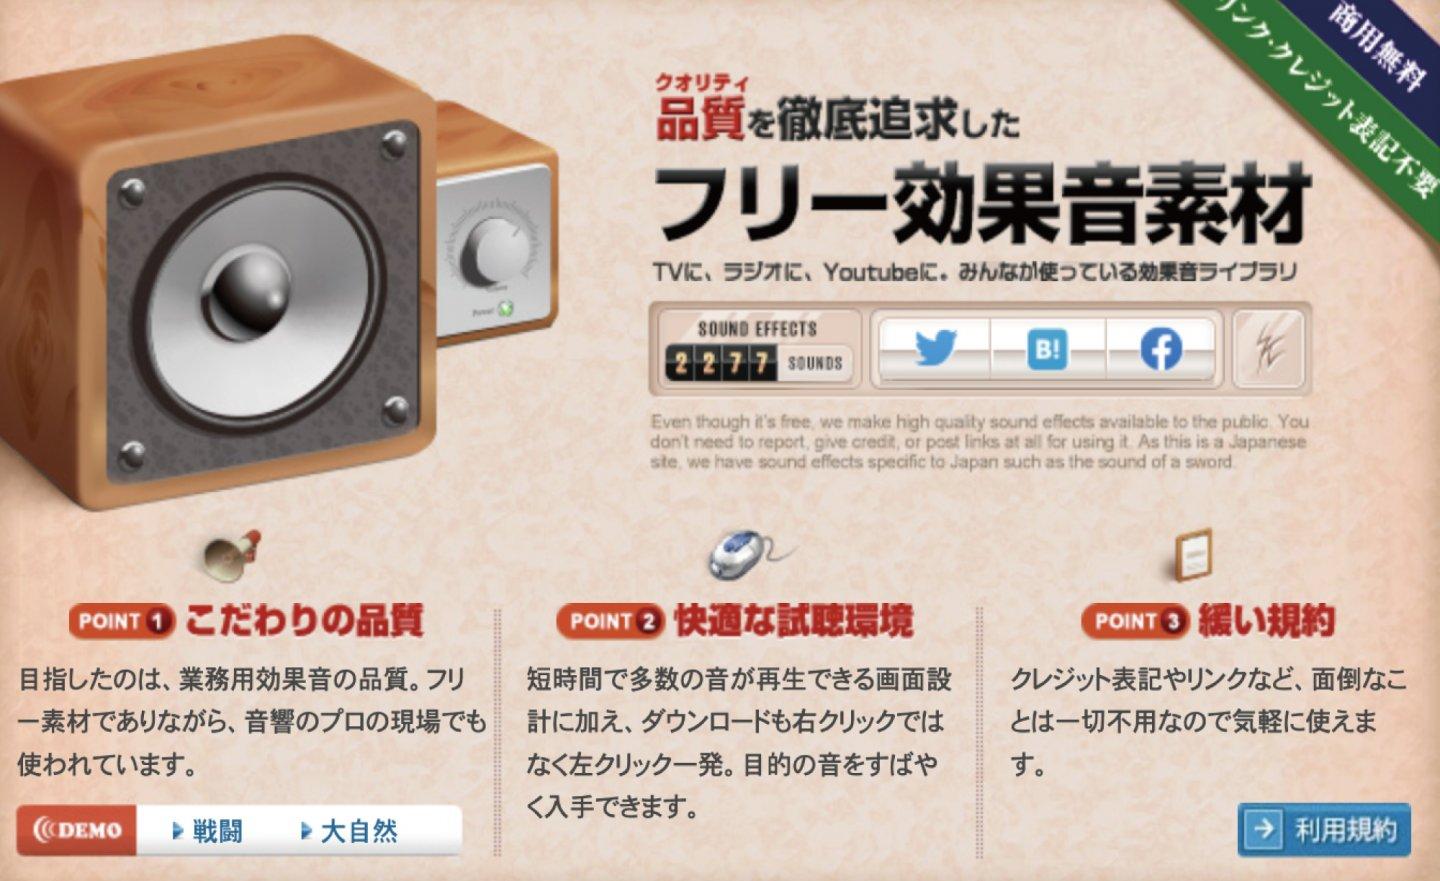 【免費】Sound Effect Lab 日本音效素材網，可用於商業用途的各種效果音